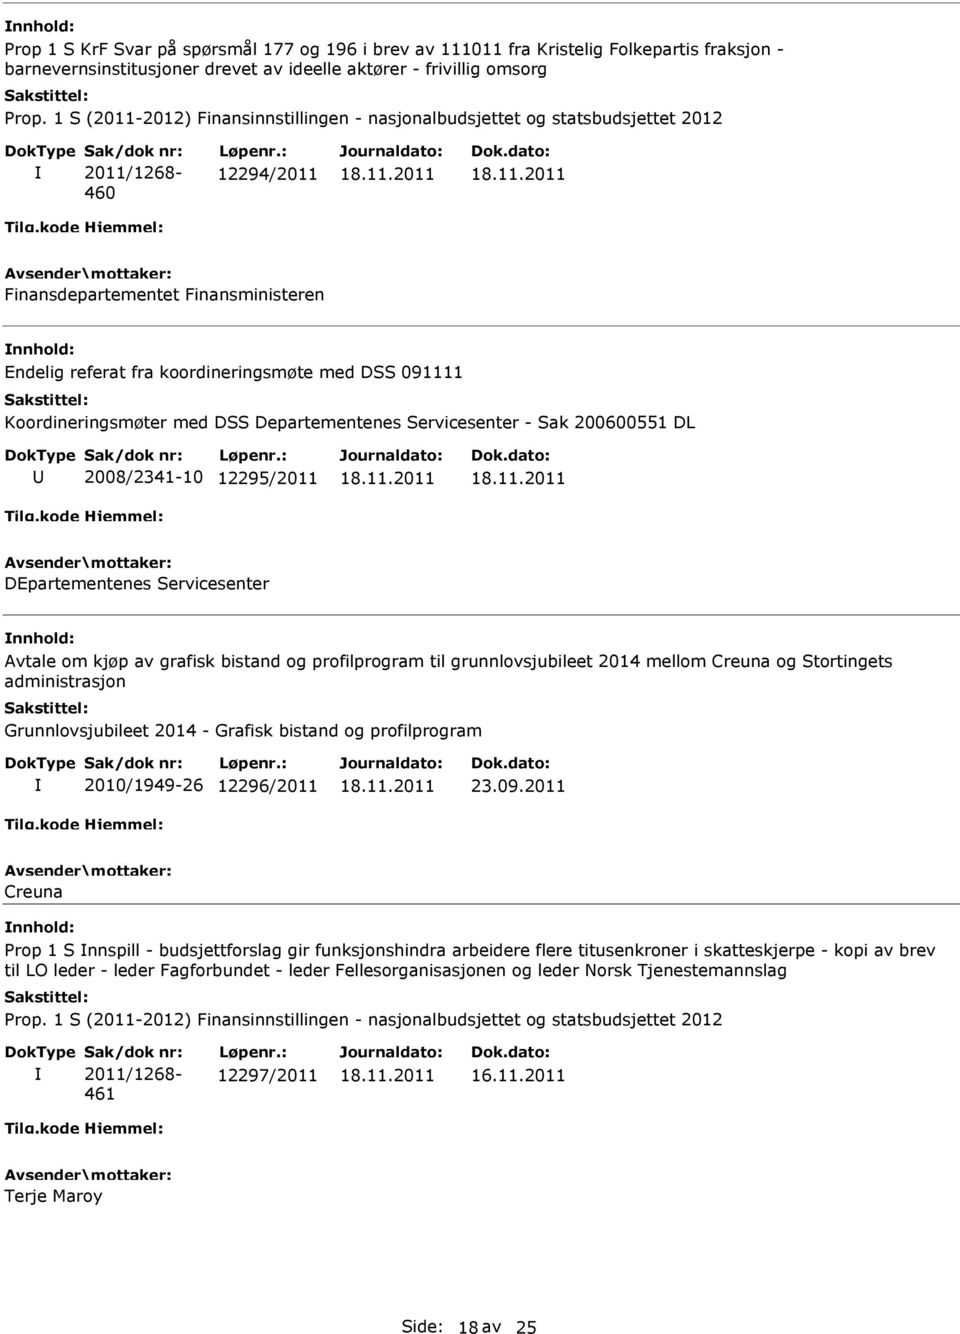 profilprogram til grunnlovsjubileet 2014 mellom Creuna og Stortingets administrasjon Grunnlovsjubileet 2014 - Grafisk bistand og profilprogram 2010/1949-26 12296/2011 23.09.